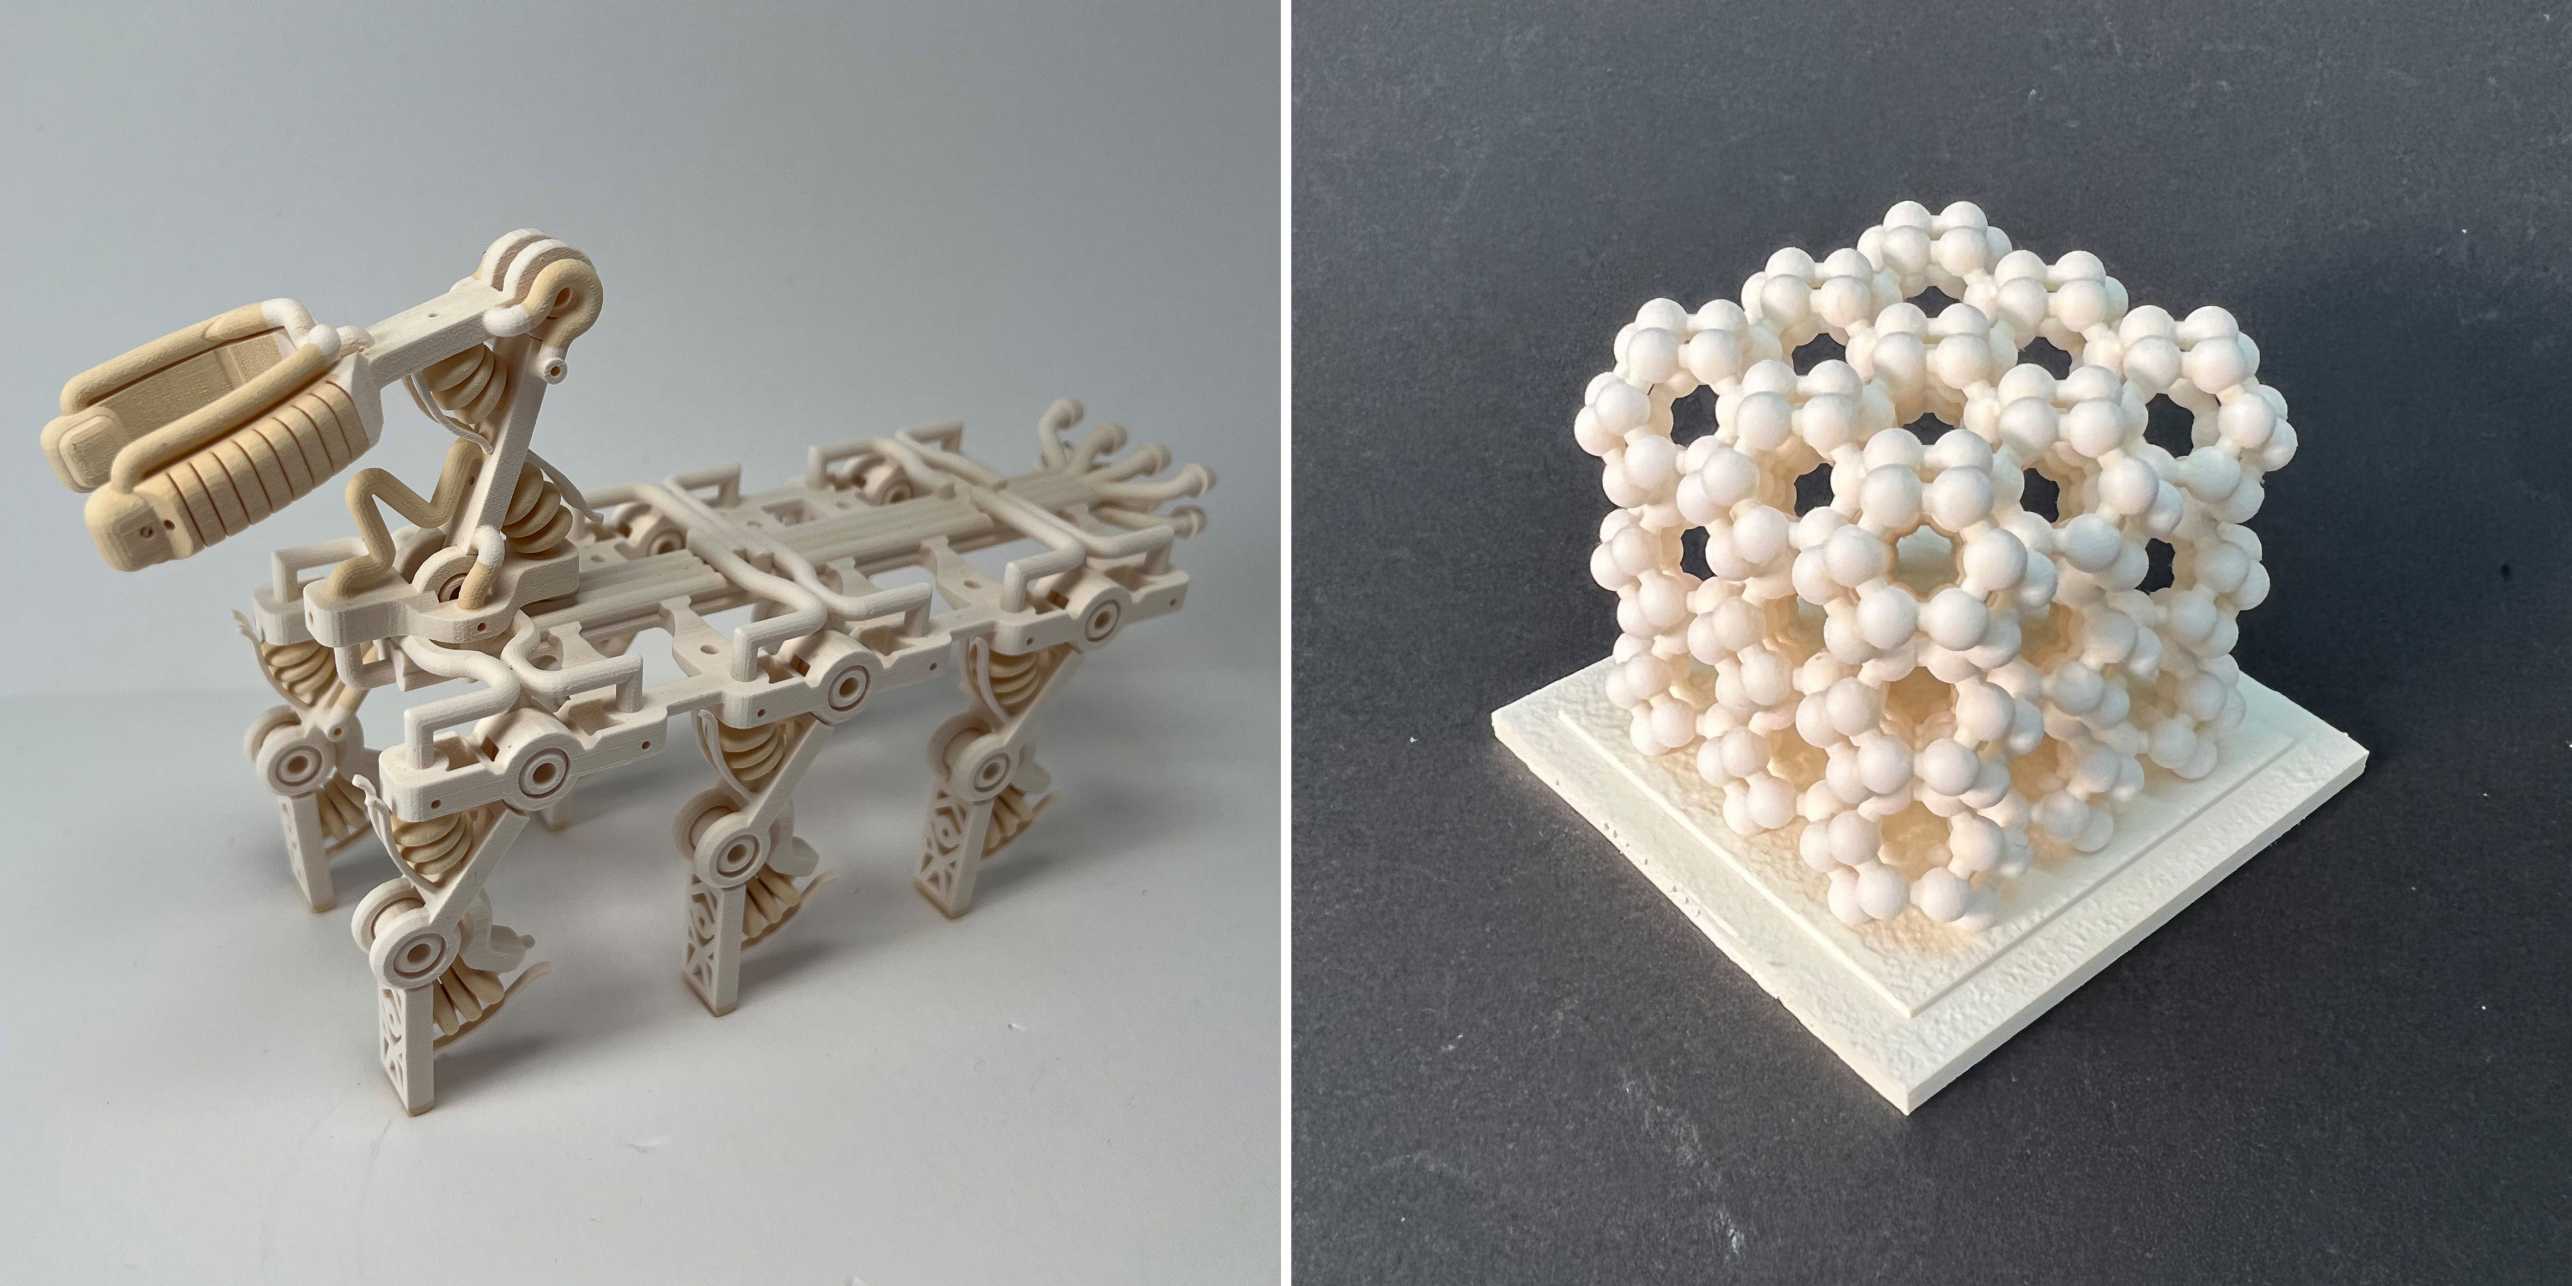 Zwei Beispiele von 3D-gedruckten Gegenständen